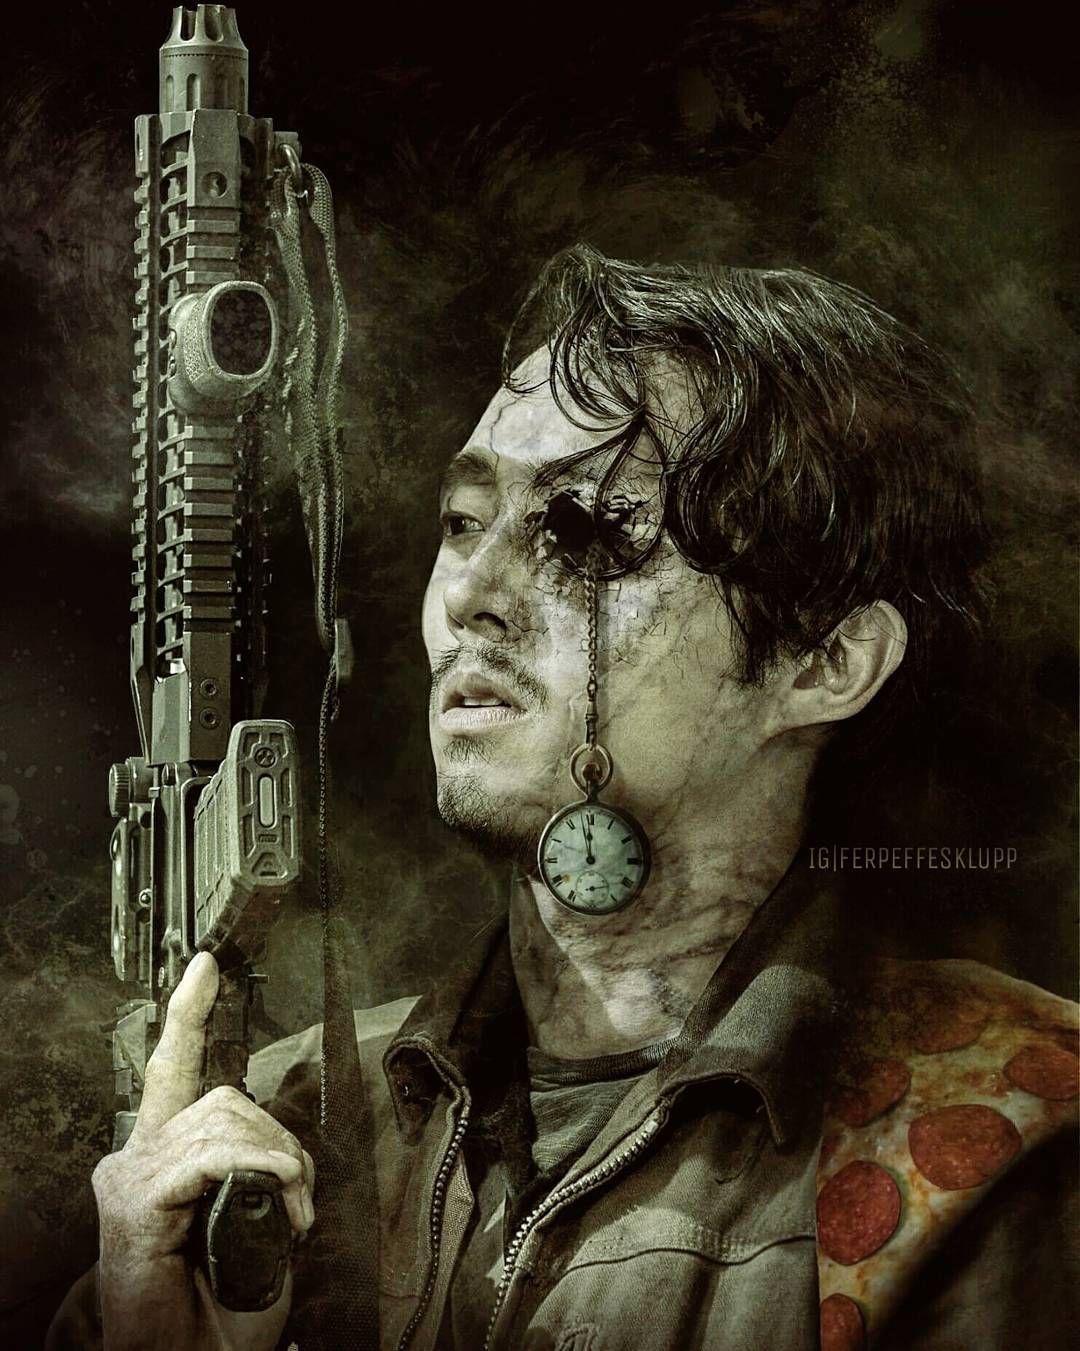 Glenn Rhee. Season 9. The Walking Dead (AMC). Walking dead fan art, The walking dead poster, Walking dead art